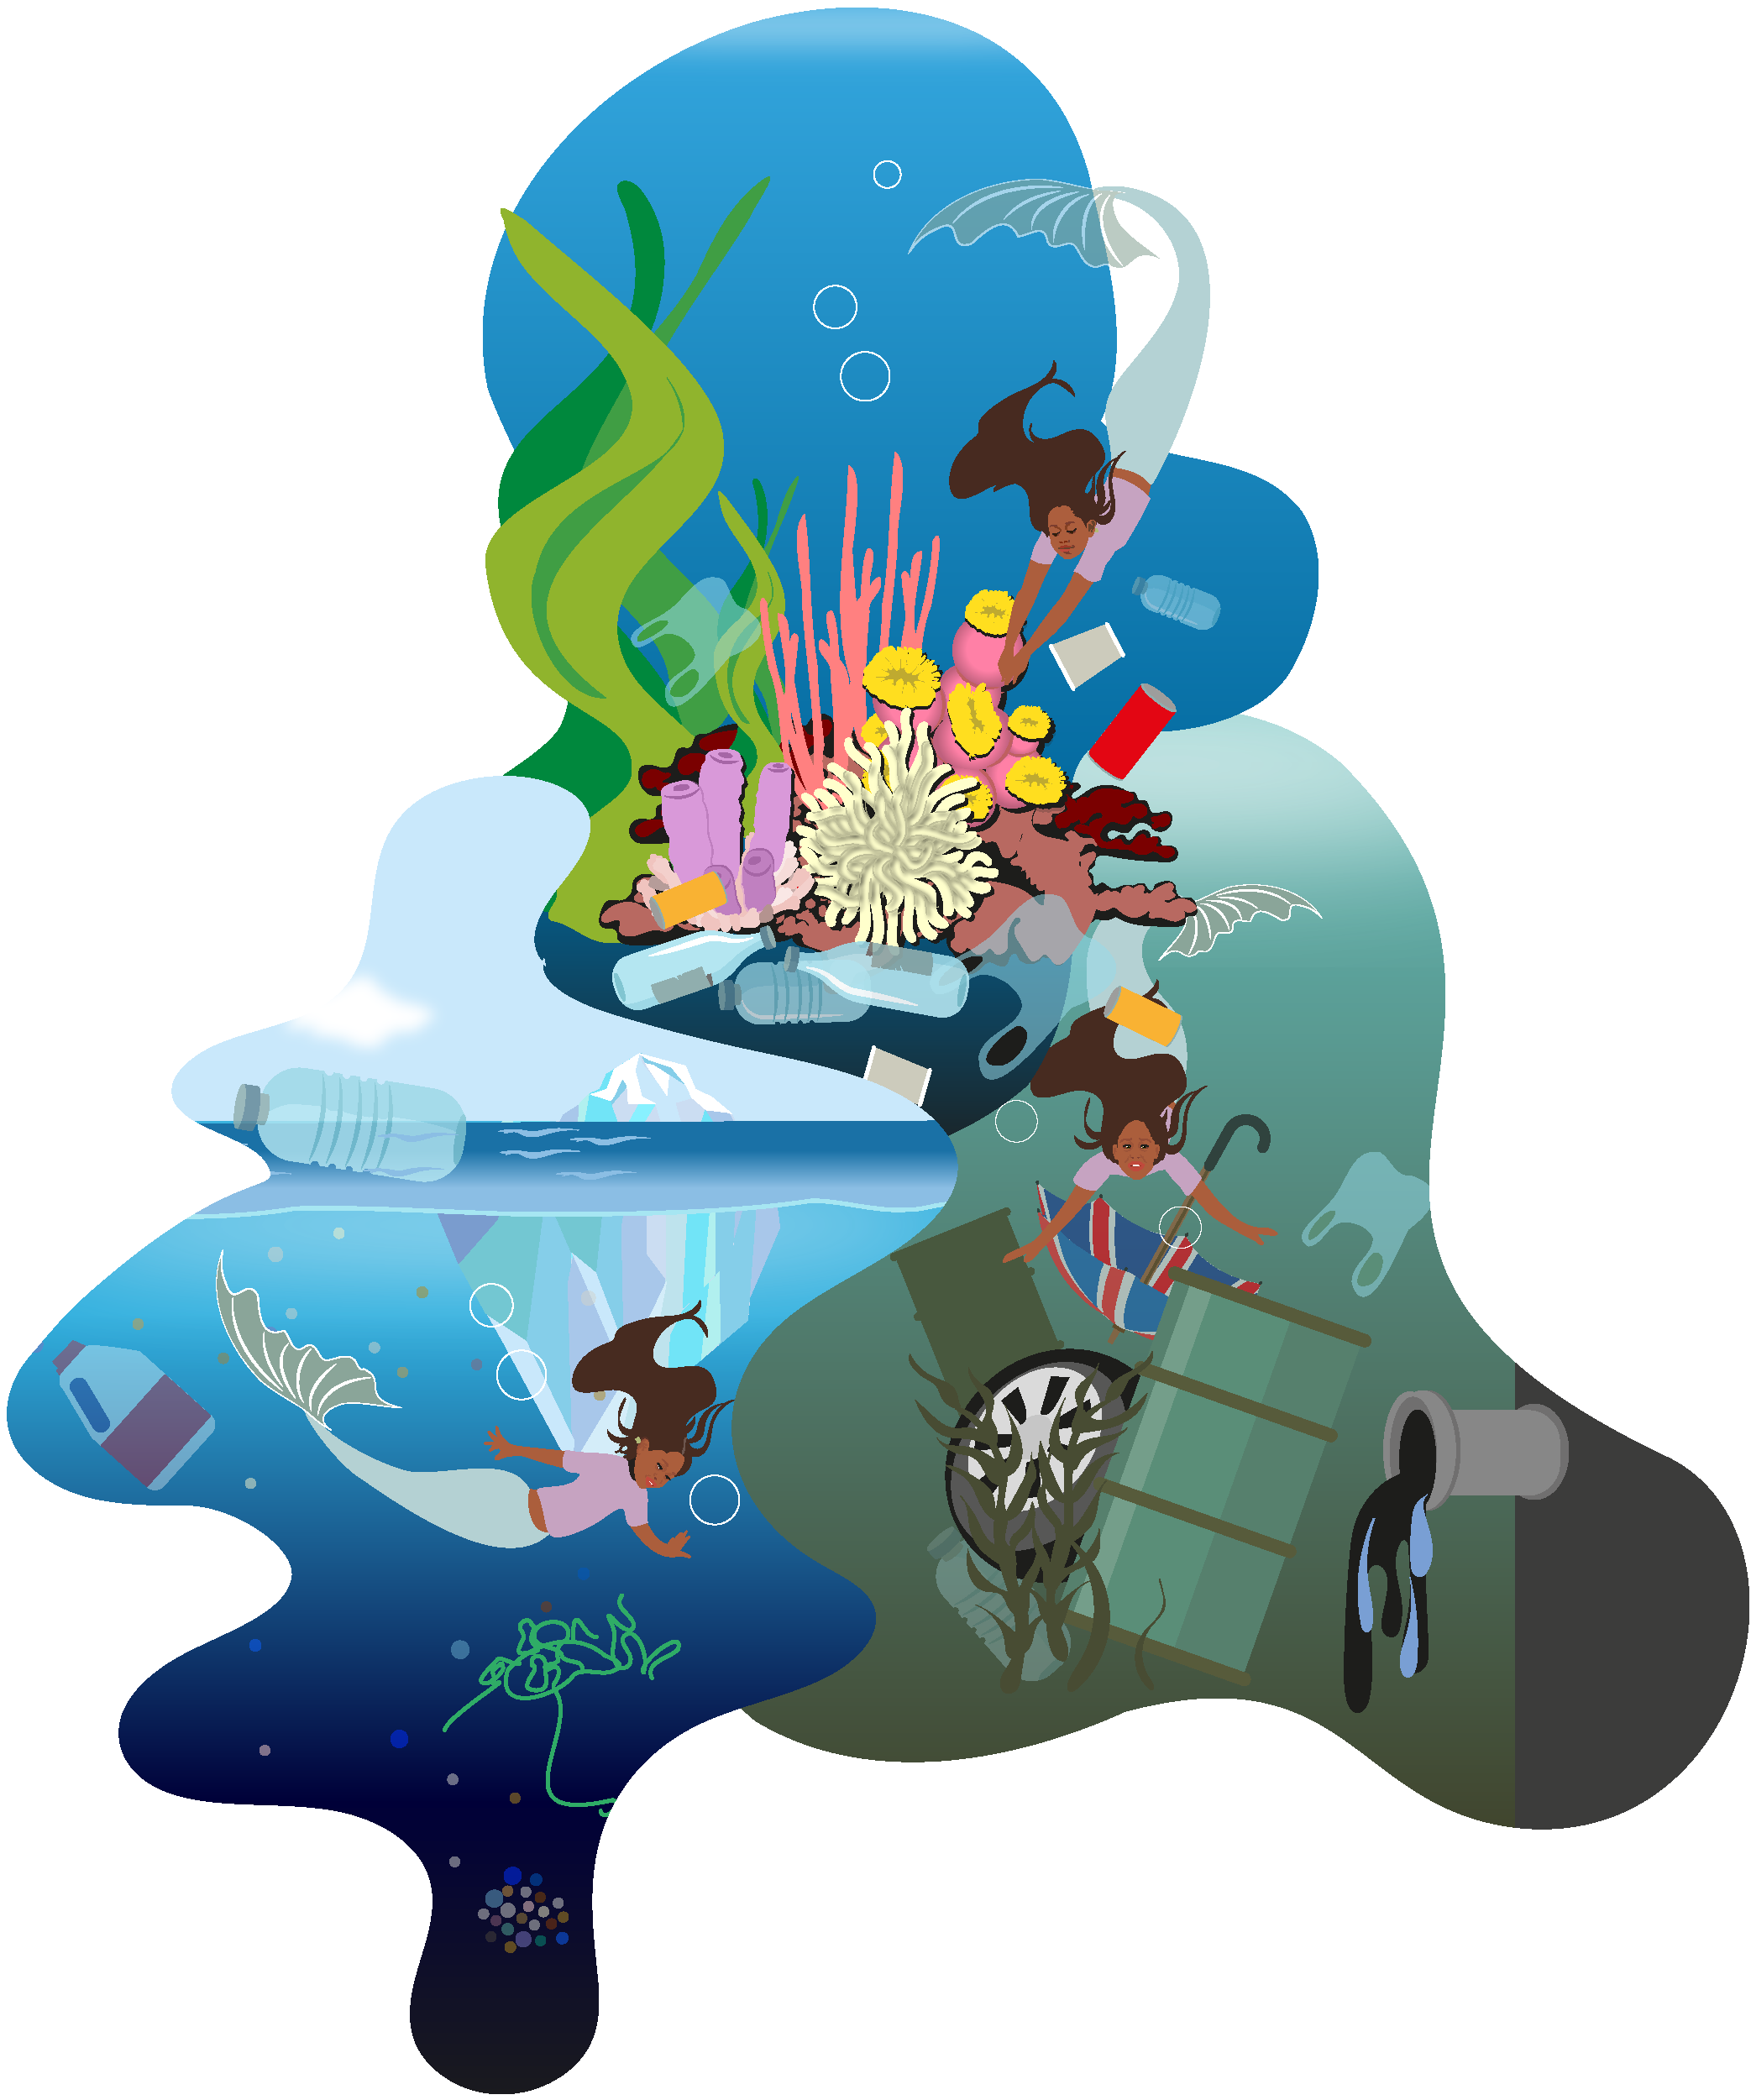 Charaktere und Figuren | Characterdesign: Ein Mermaid-Character ist für den Umweltschutz im Einsatz und kämpft gegen die Vermüllung der Ozeane, Meere, Flüsse und Seen.